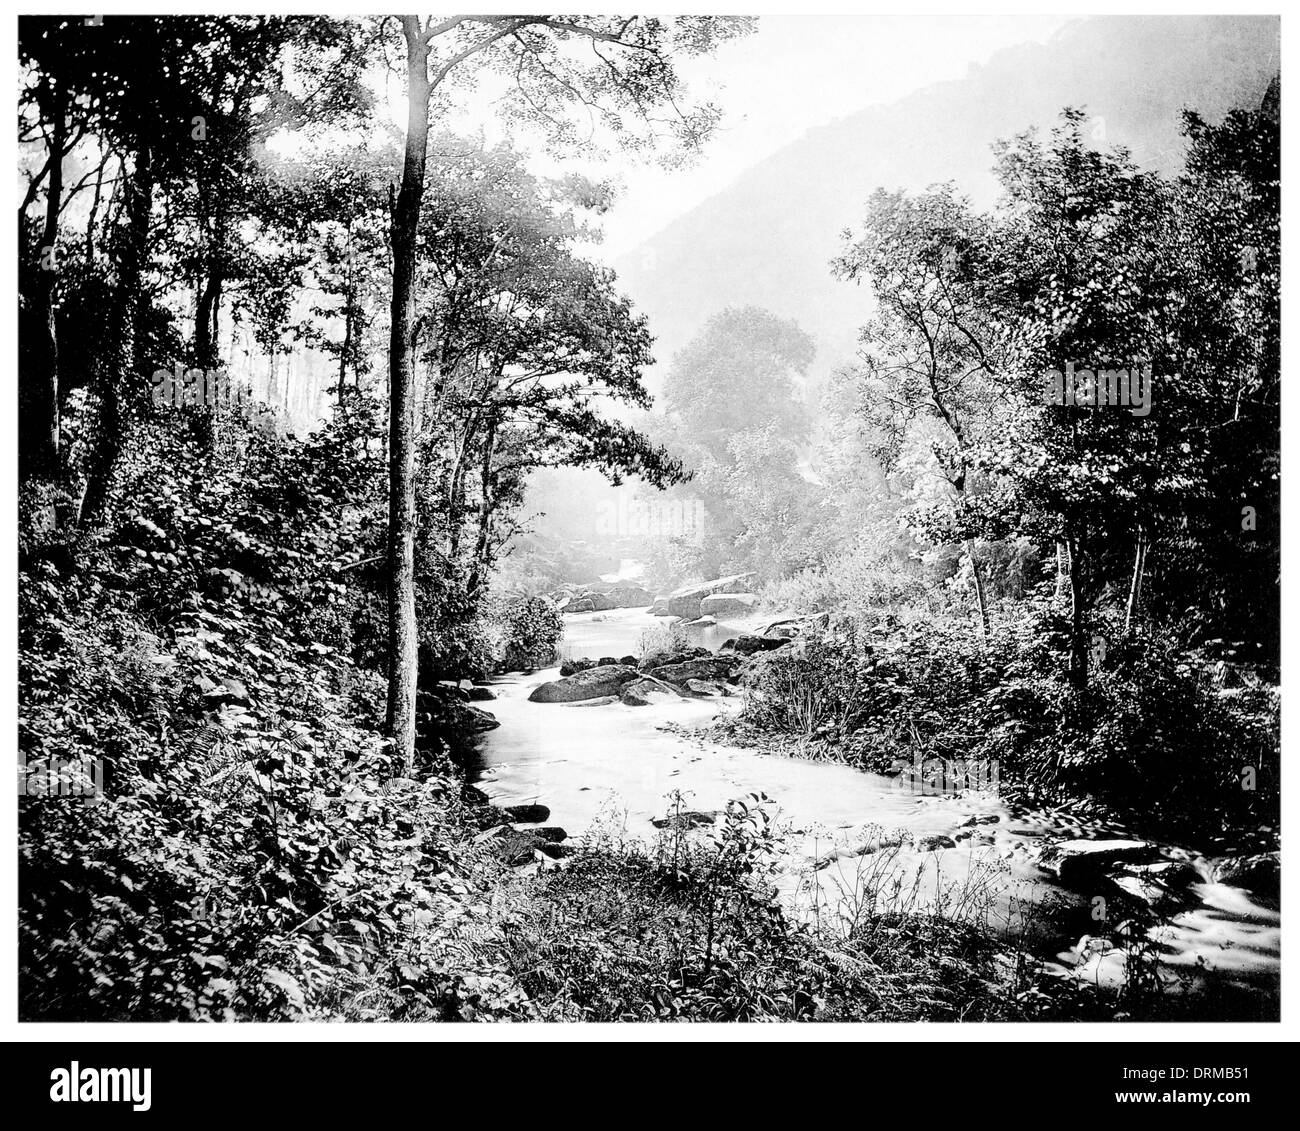 Brendon acqua, Rockford frazione del nuovo Parco Nazionale della Foresta di Hampshire, Inghilterra fotografato circa 1910 Foto Stock